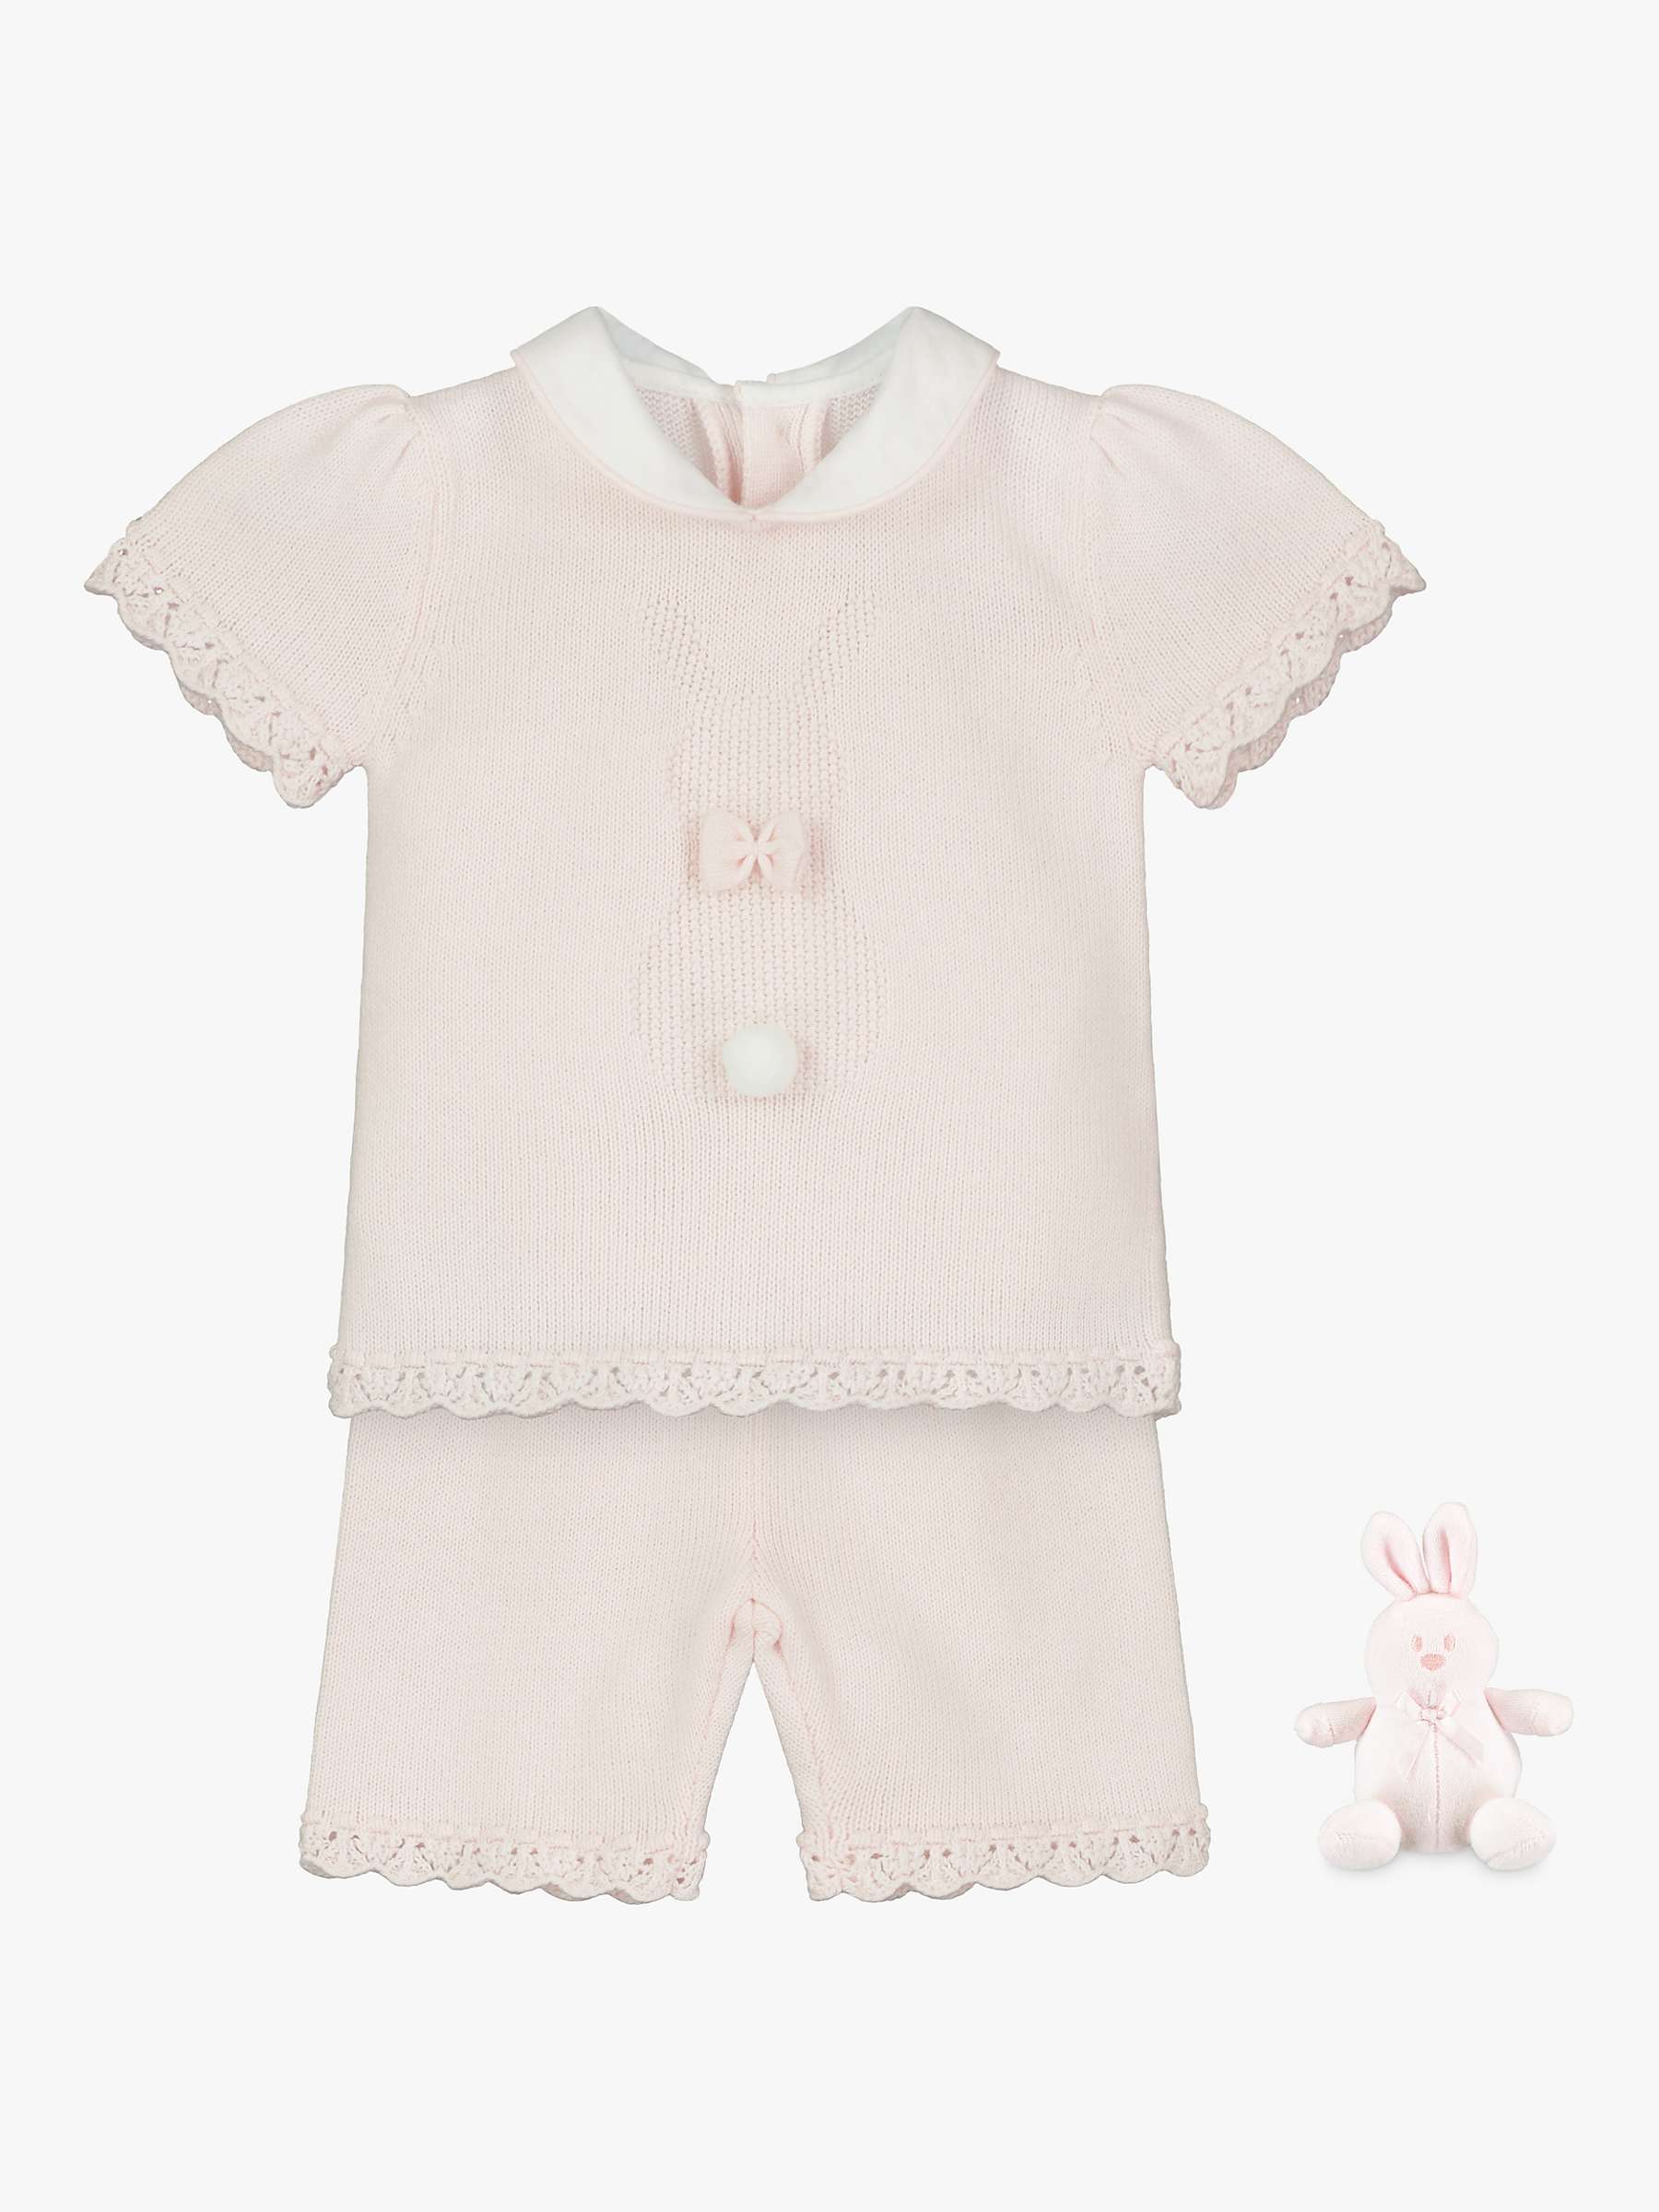 Buy Emile et Rose Baby Felicity Top & Shorts Set, Pale Pink Online at johnlewis.com